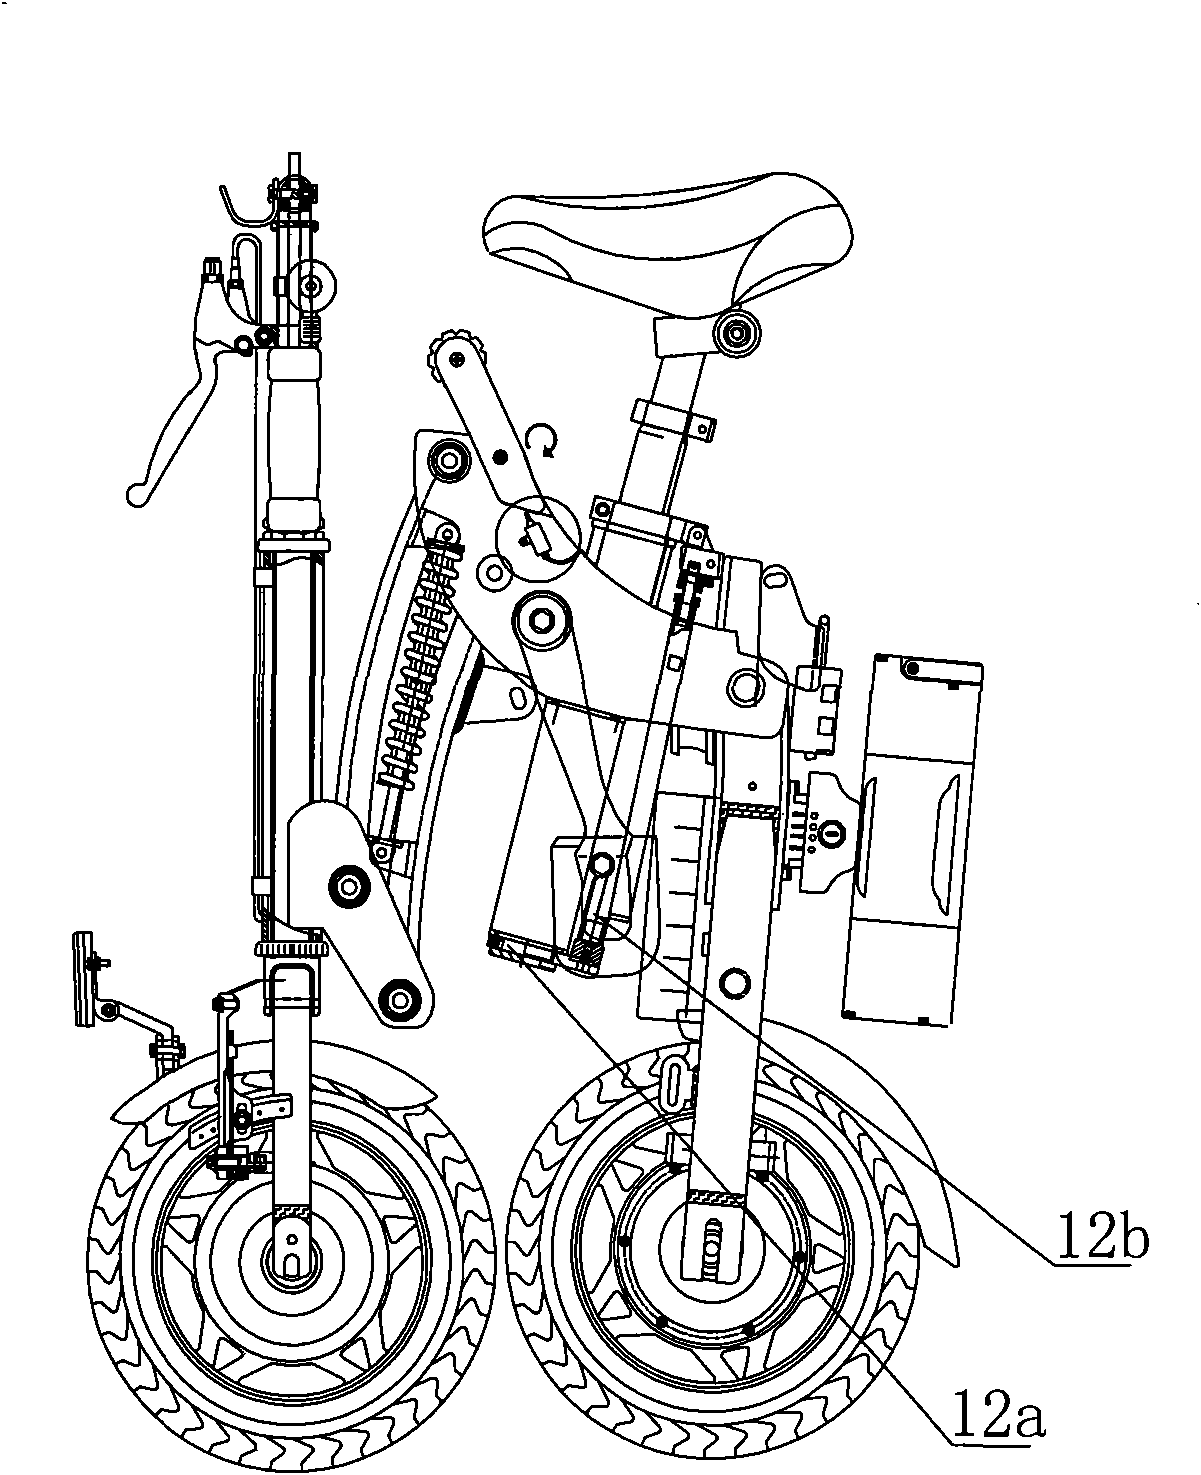 Semi-automatic folding moped